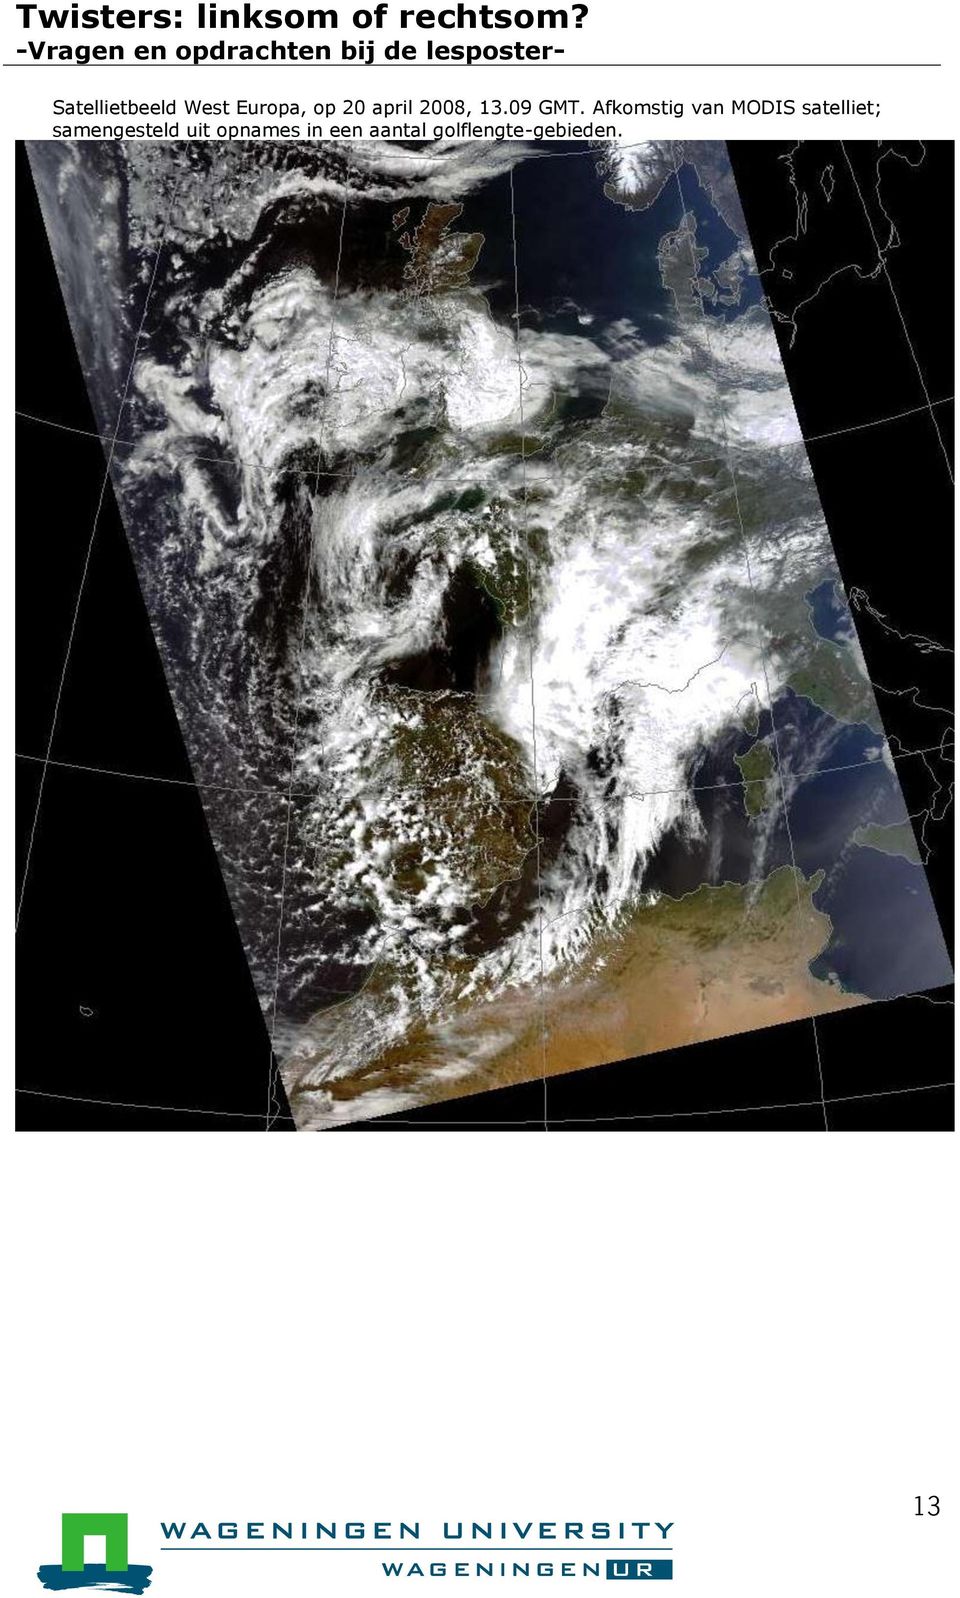 Afkomstig van MODIS satelliet;